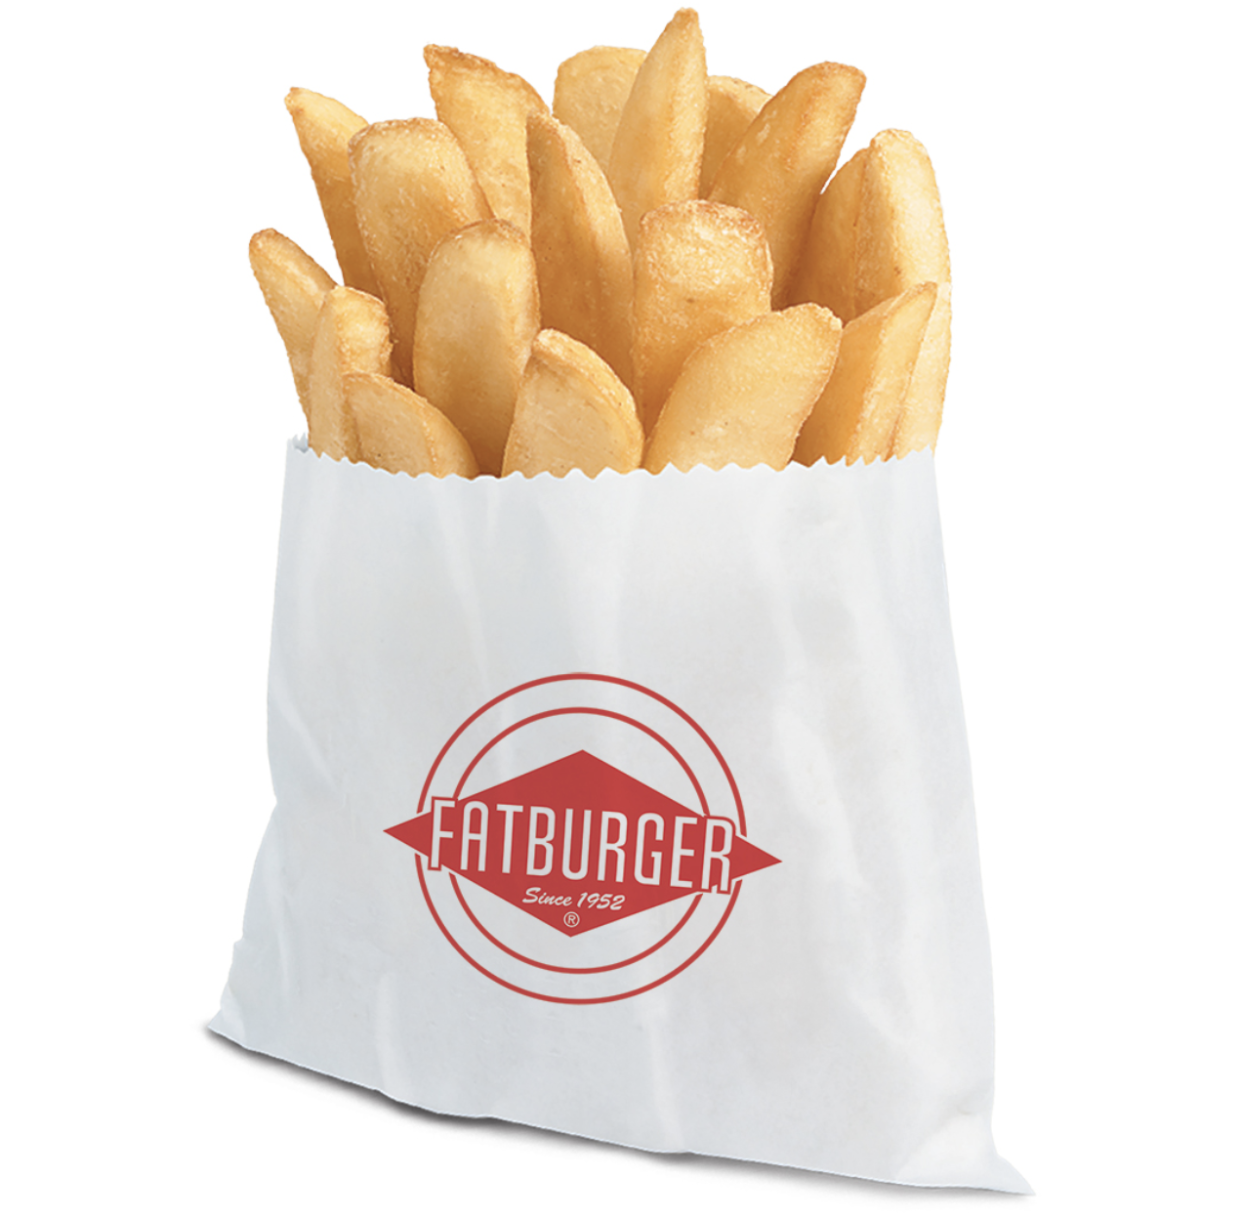 Fatburger Fries